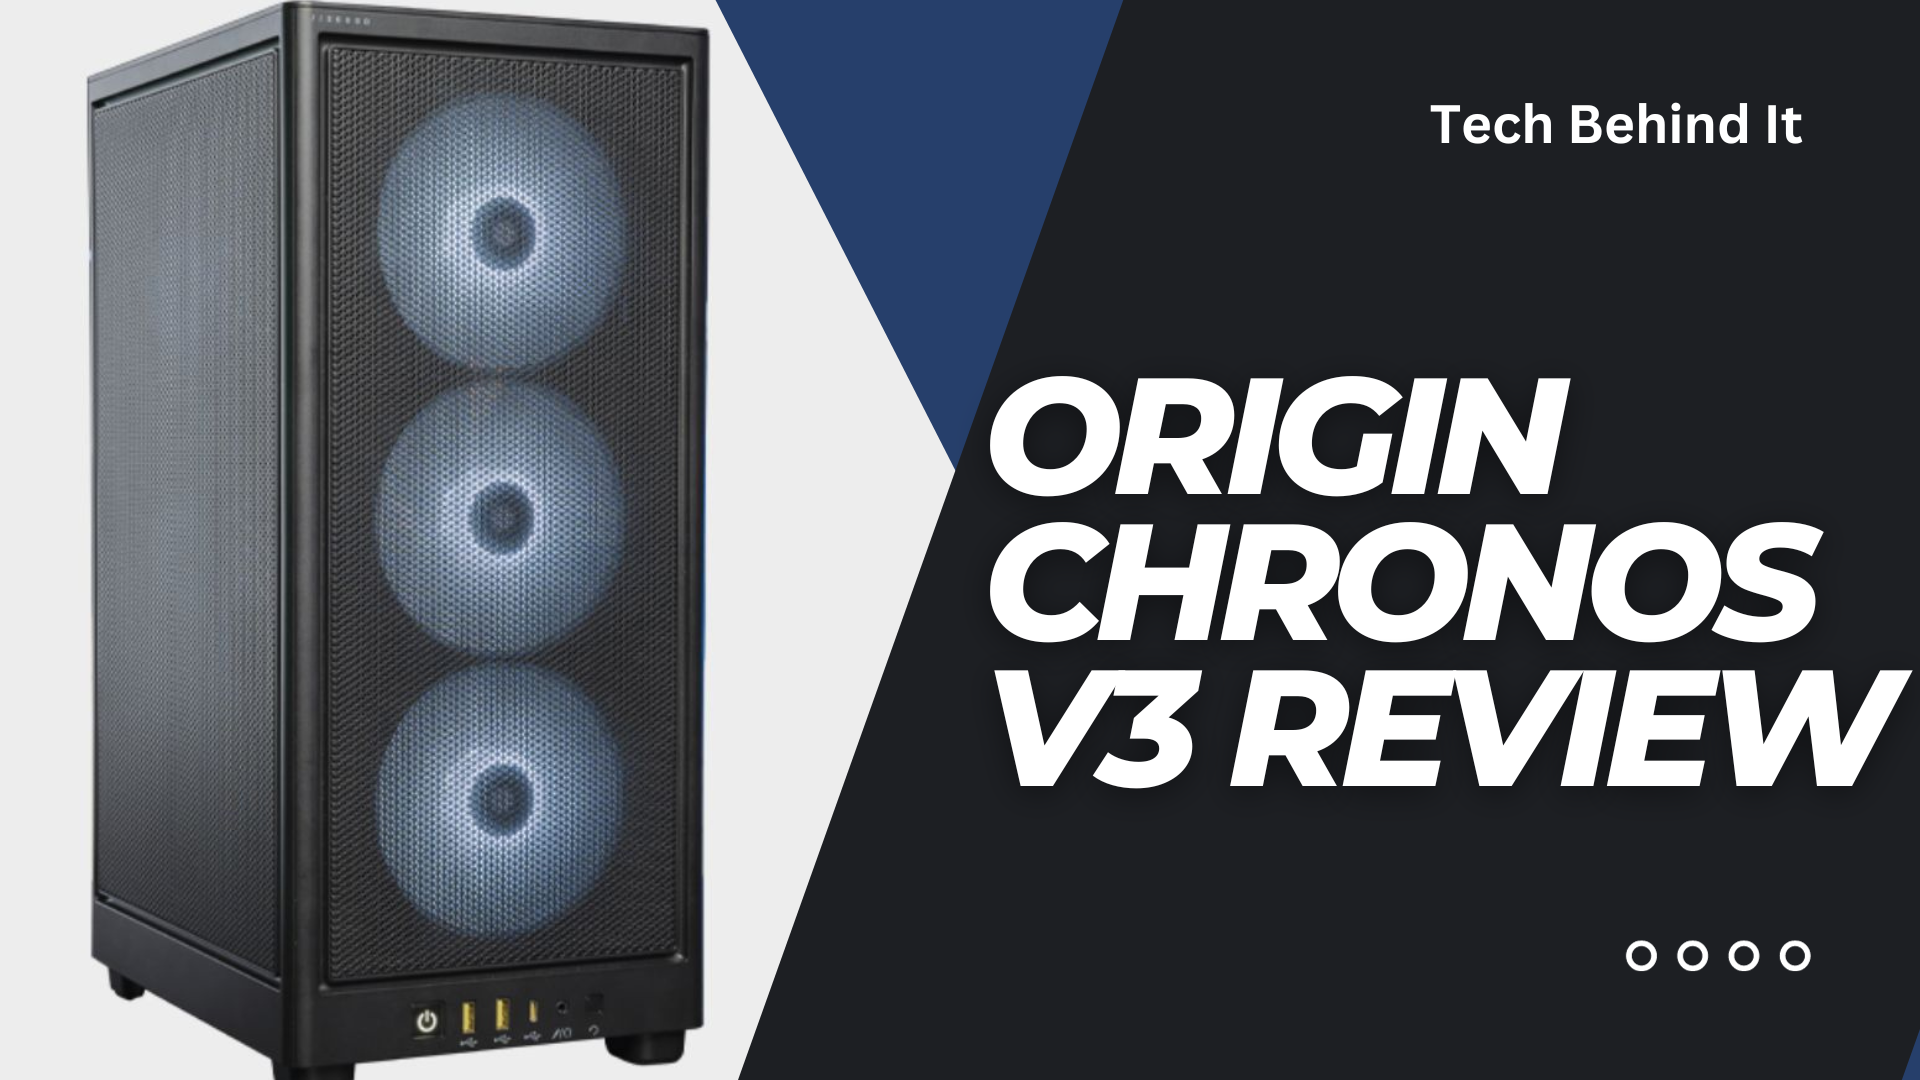 Origin Chronos V3 Review